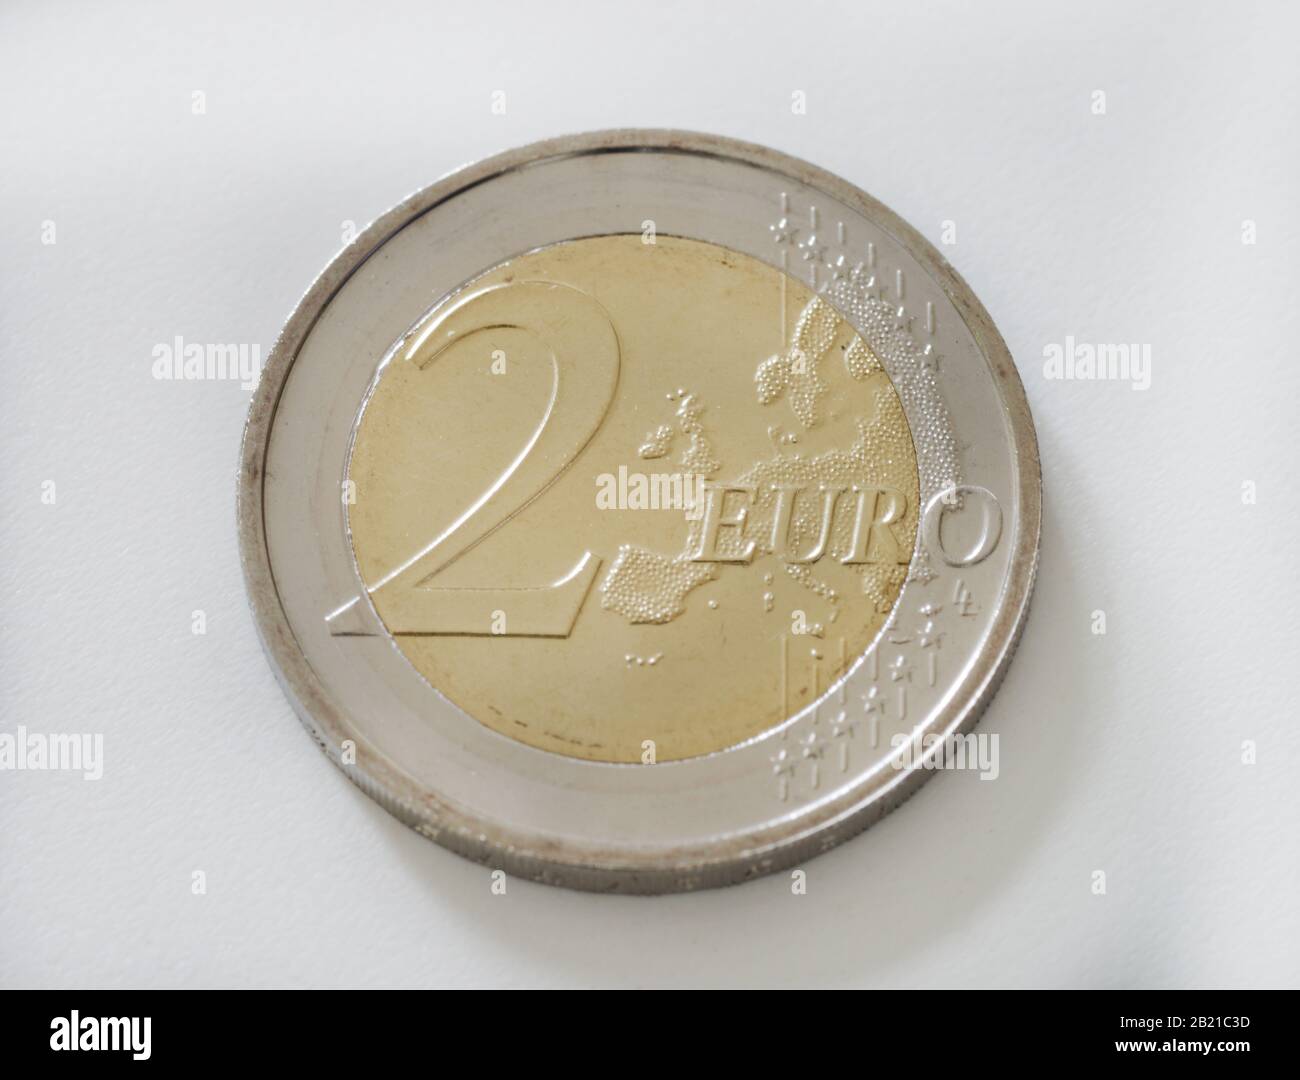 Hintergrund Mit Euro-Banknoten. 1 Euro Auf Dem Hintergrund Des Geldes. Eine  Euro-Münze. Ansicht Von Oben Lizenzfreie Fotos, Bilder und Stock  Fotografie. Image 143187514.